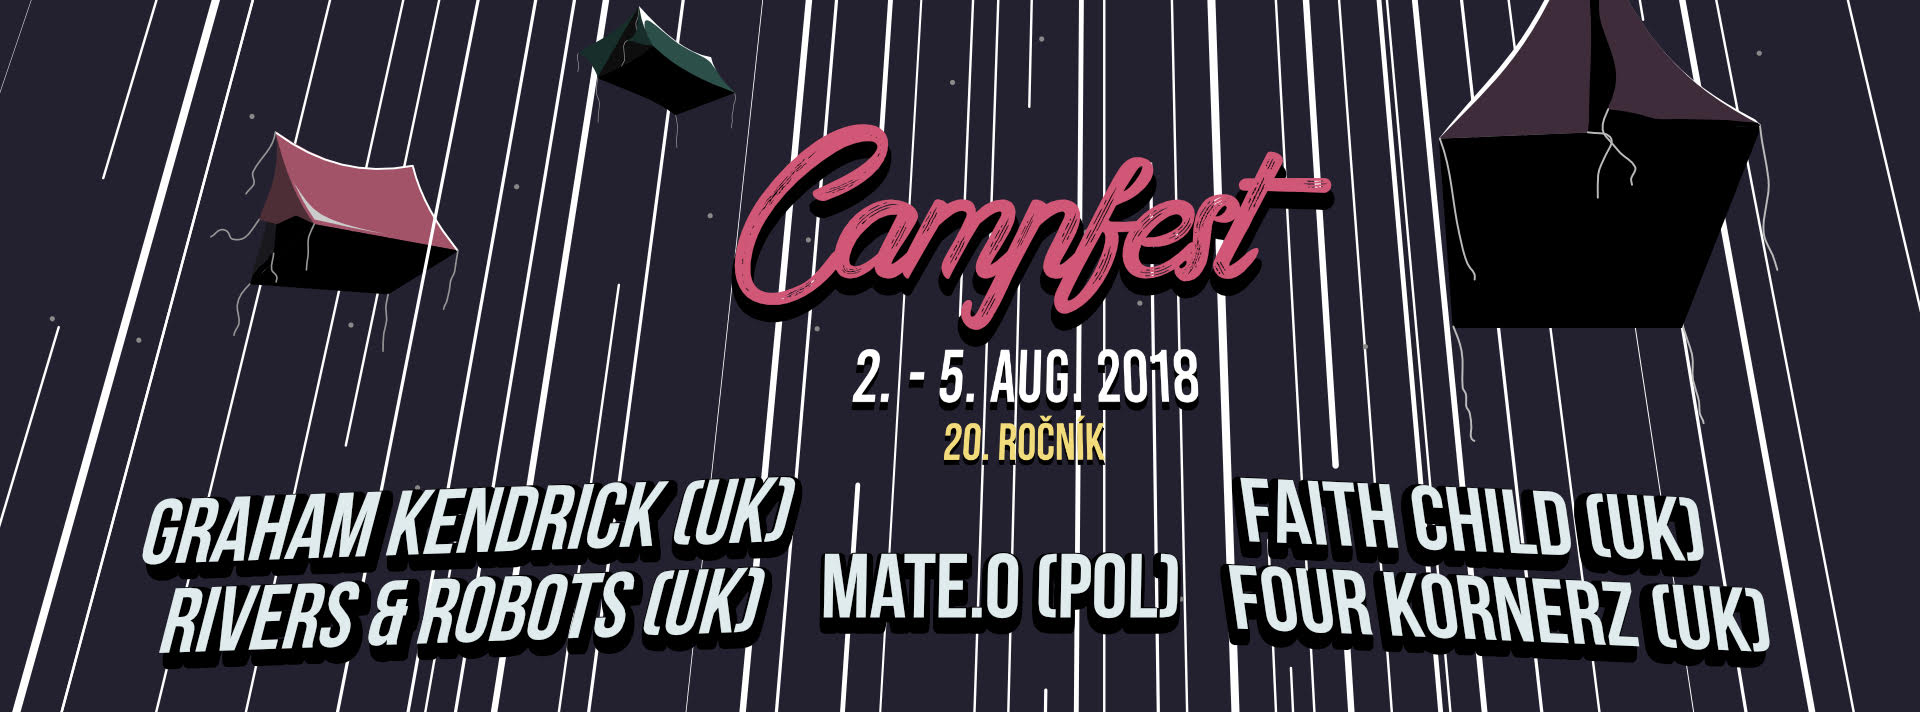 První jména kapel CampFestu 2018 zveřejněná